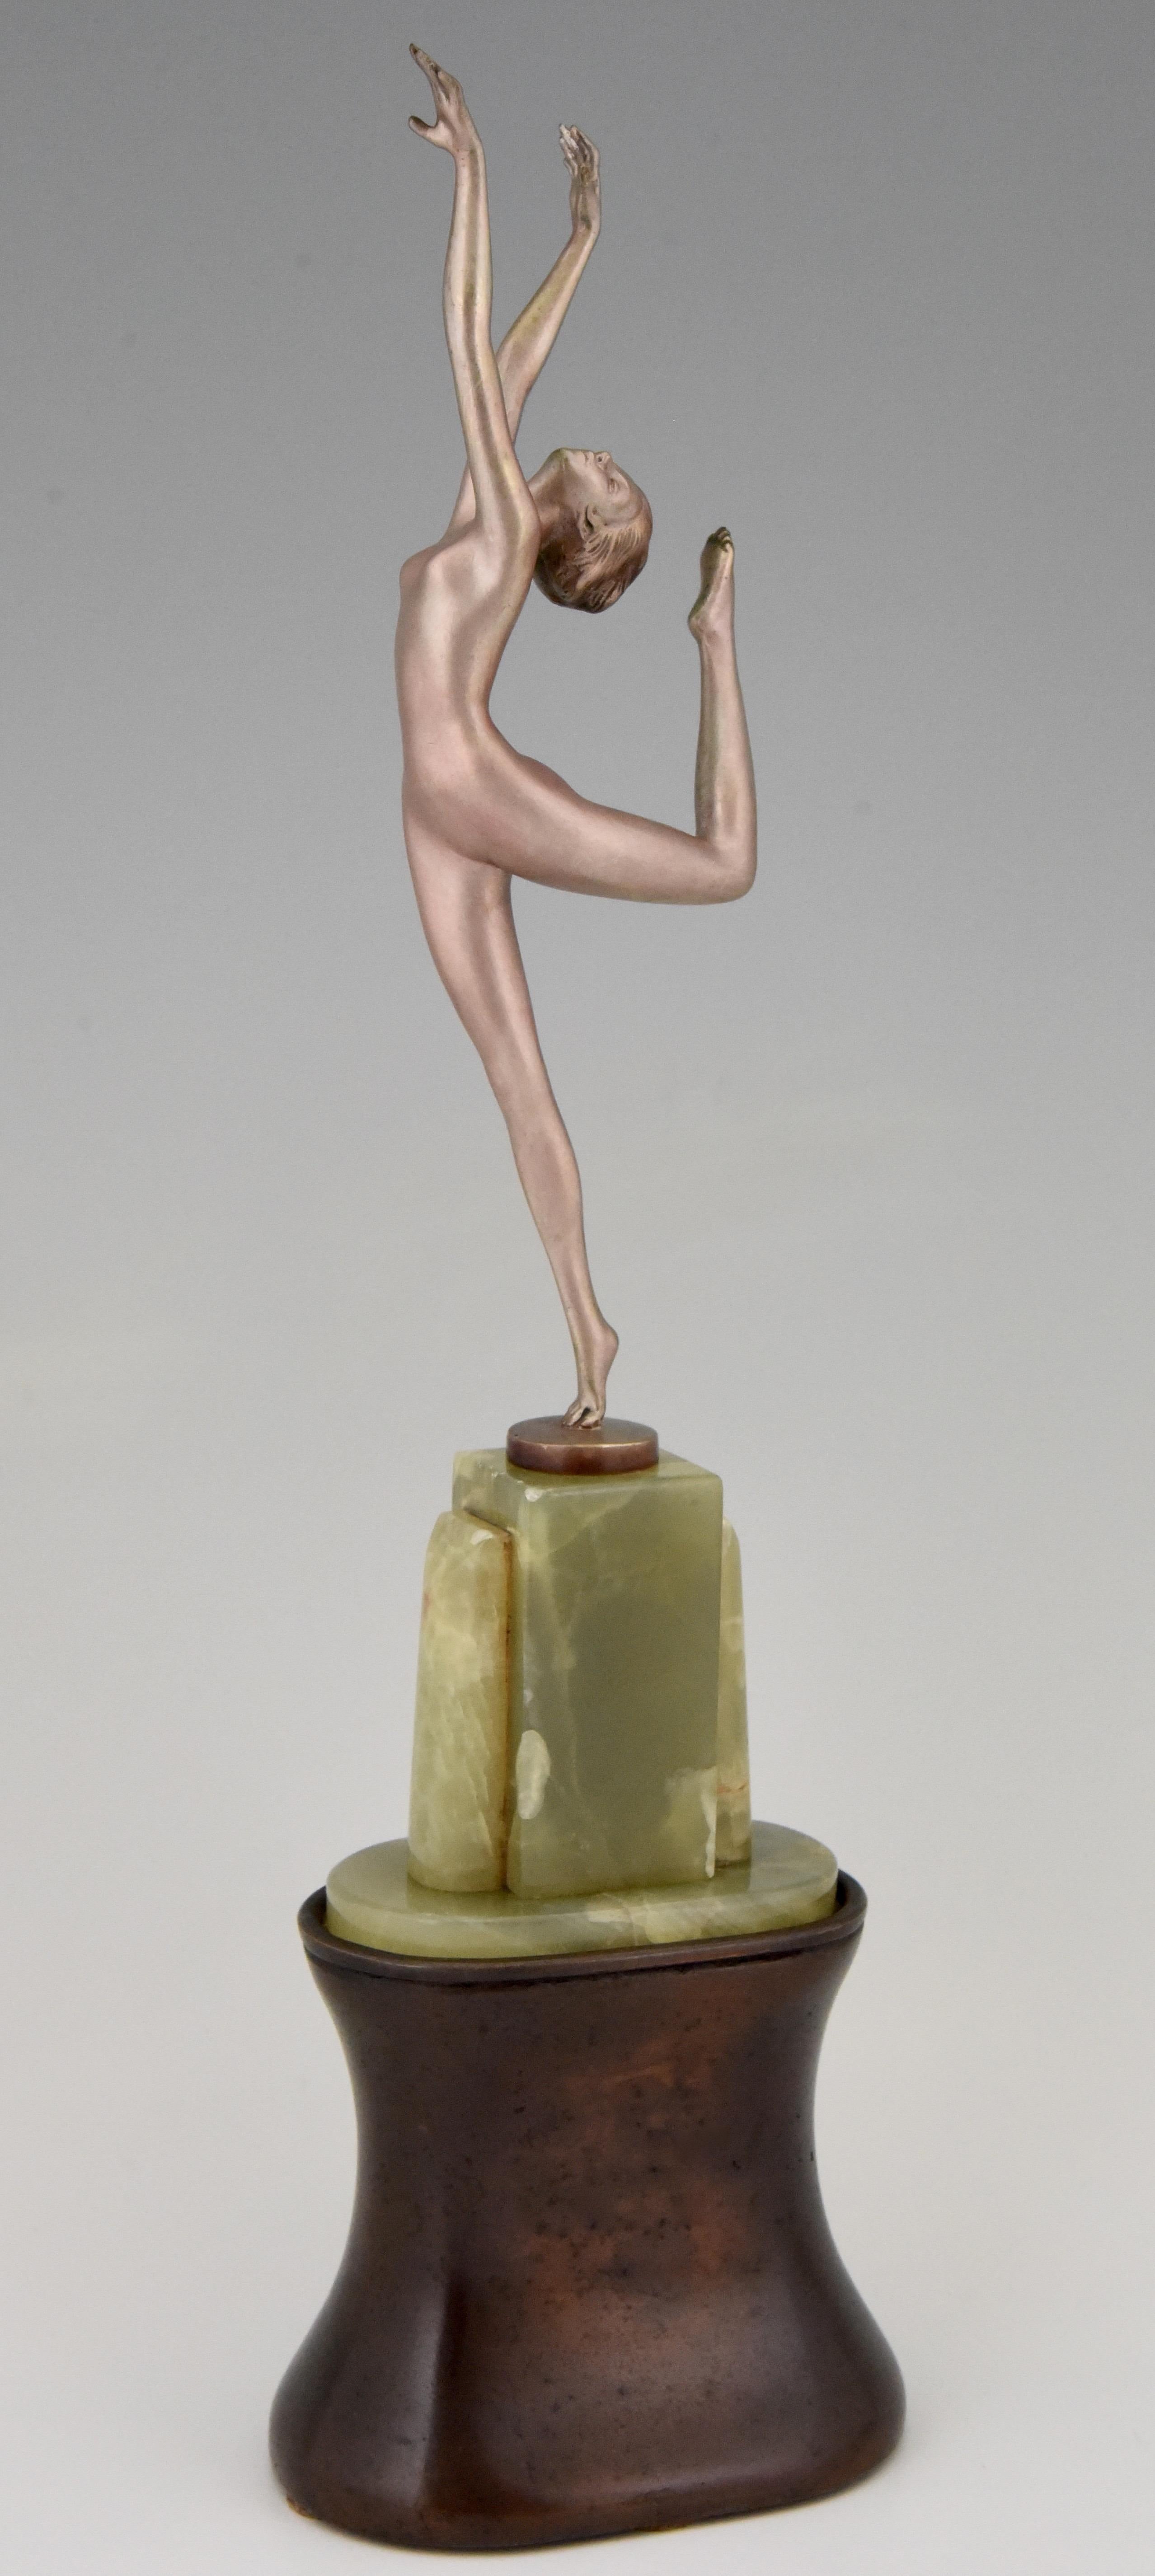 Art-Deco-Bronzeskulptur eines eleganten tanzenden Aktes, der auf einem Bein balanciert.
Signiert von Joseph Lorenzl, Österreich, 1925.
Die Bronze hat eine schöne Silberpatina und steht auf einem Sockel aus Onyx und Bornit. Die Höhe der Skulptur